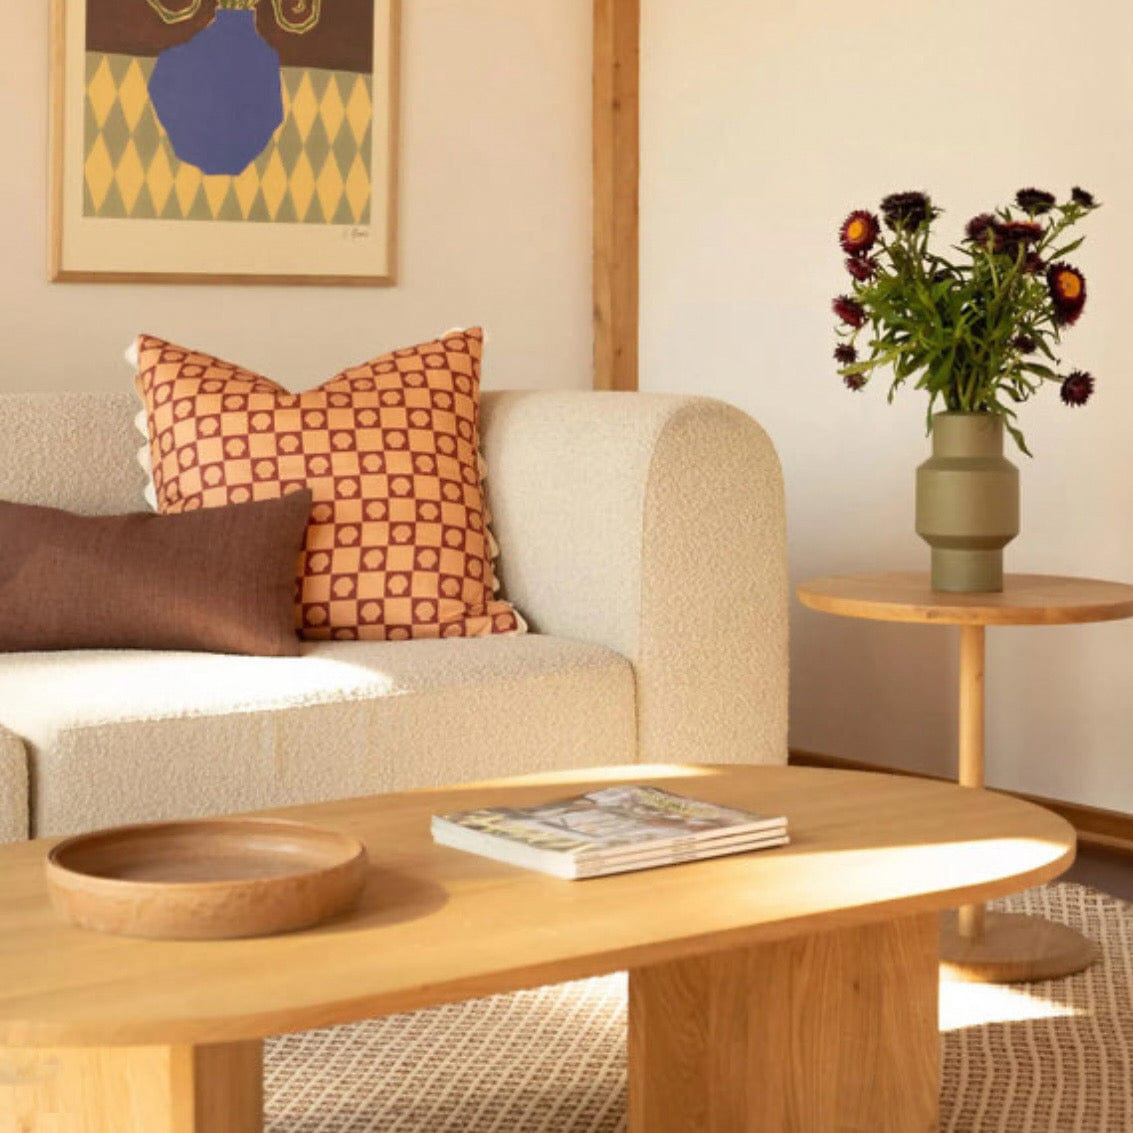 Home Atelier Bayden Scratch Resistant Curve Sofa